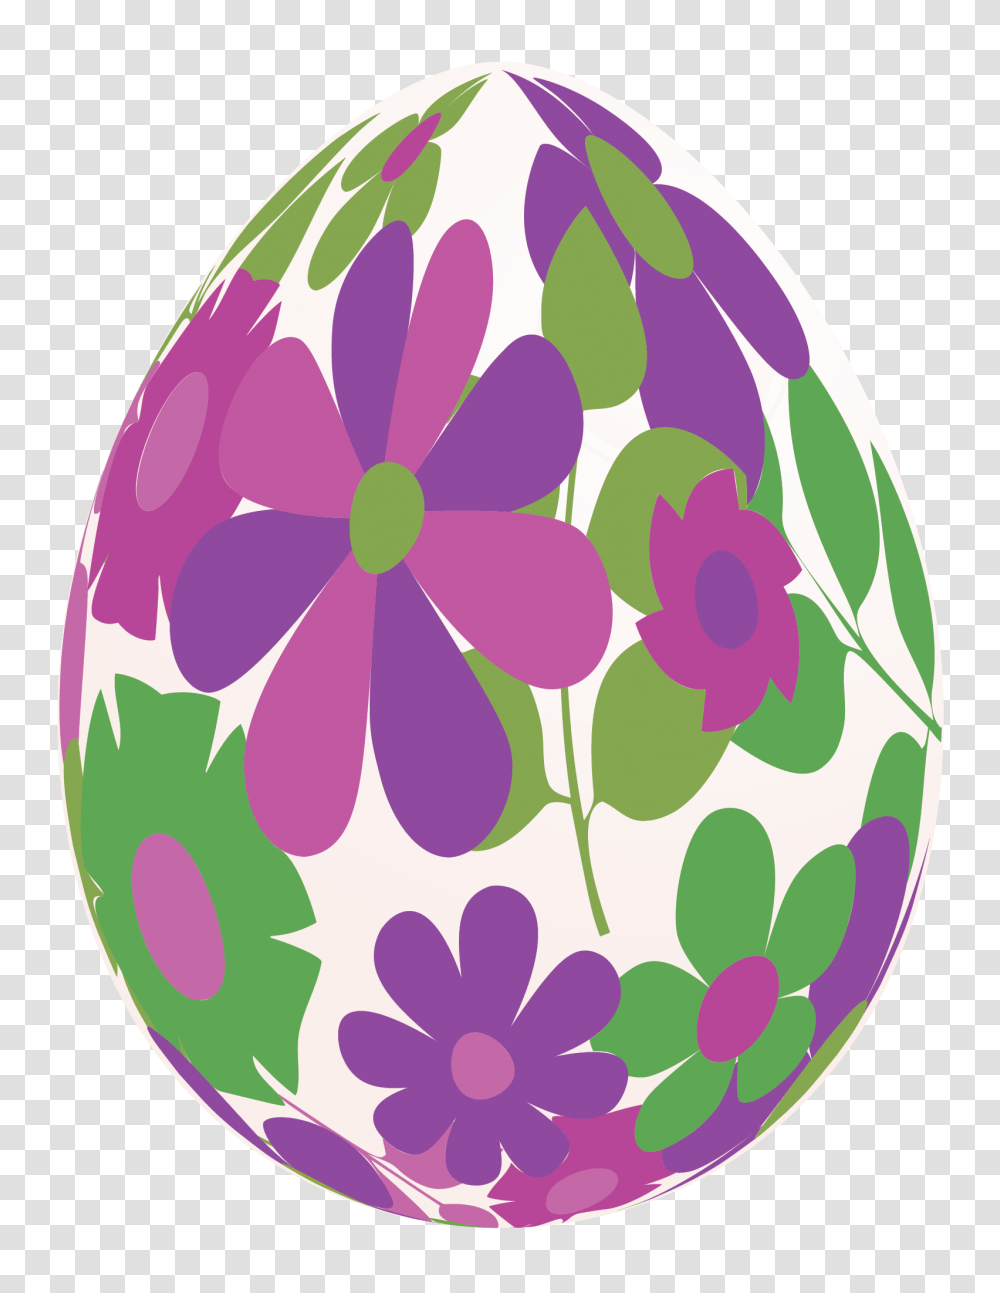 Easter Eggs Clipart Flower Background Easter Eggs, Food, Rug, Floral Design, Pattern Transparent Png